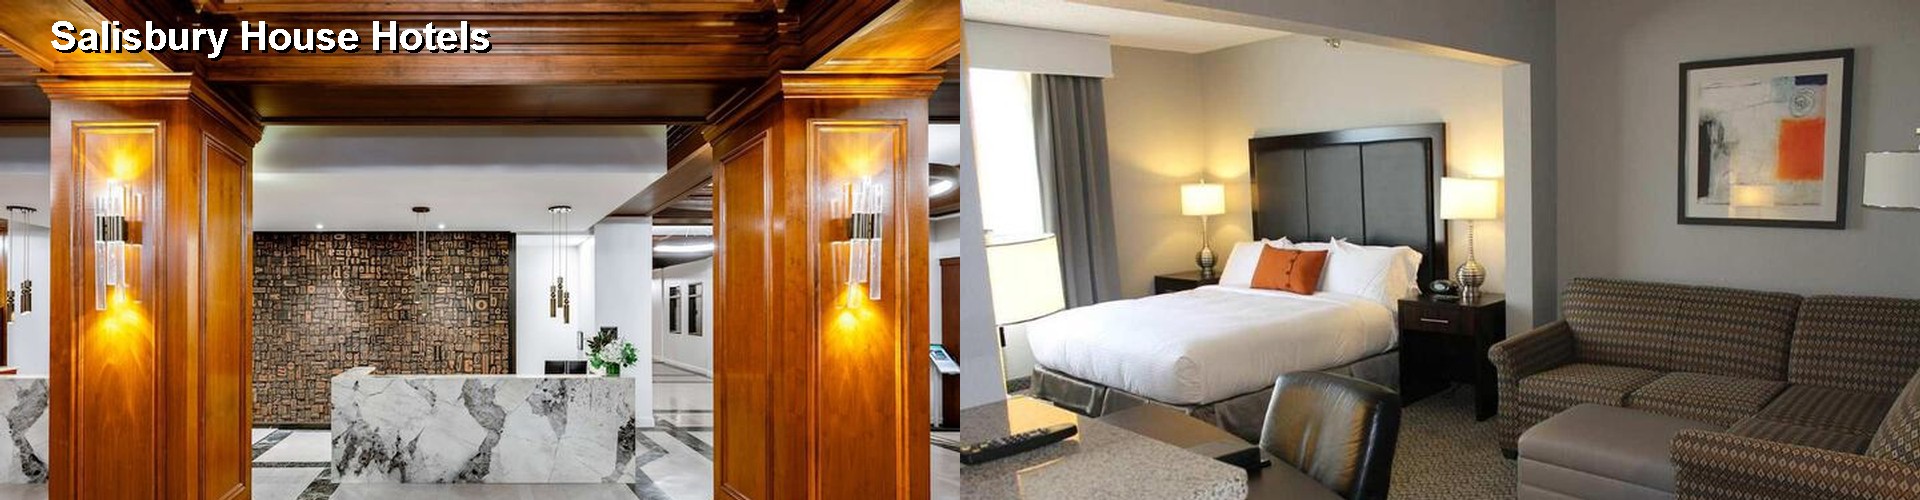 5 Best Hotels near Salisbury House